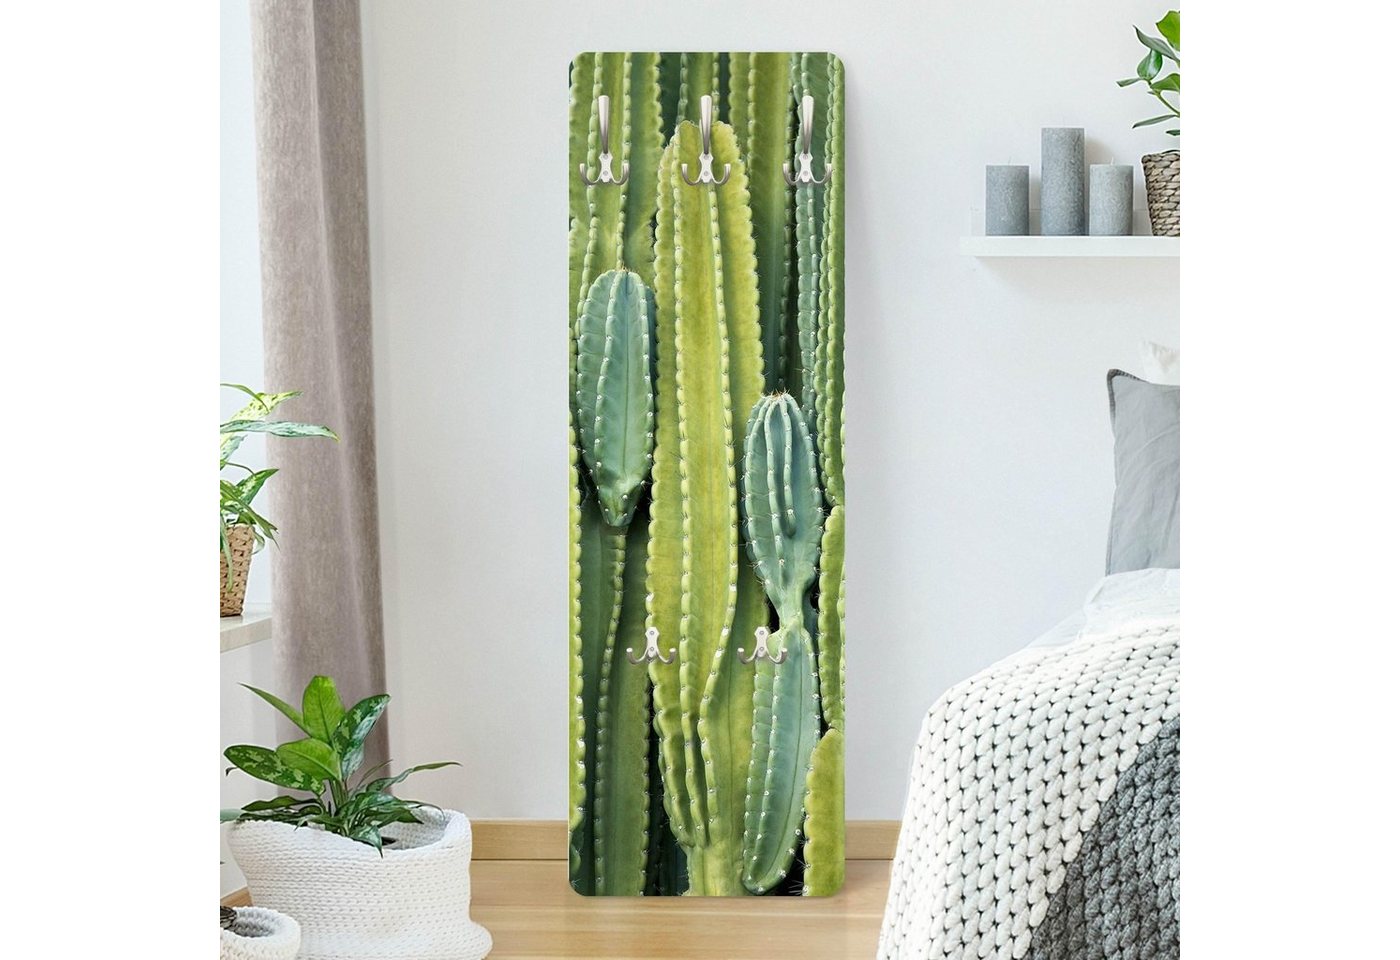 Bilderdepot24 Garderobenpaneel grün Blumen Floral Botanik Tropisch Kaktus Wand Design (ausgefallenes Flur Wandpaneel mit Garderobenhaken Kleiderhaken hängend), moderne Wandgarderobe - Flurgarderobe im schmalen Hakenpaneel Design von Bilderdepot24